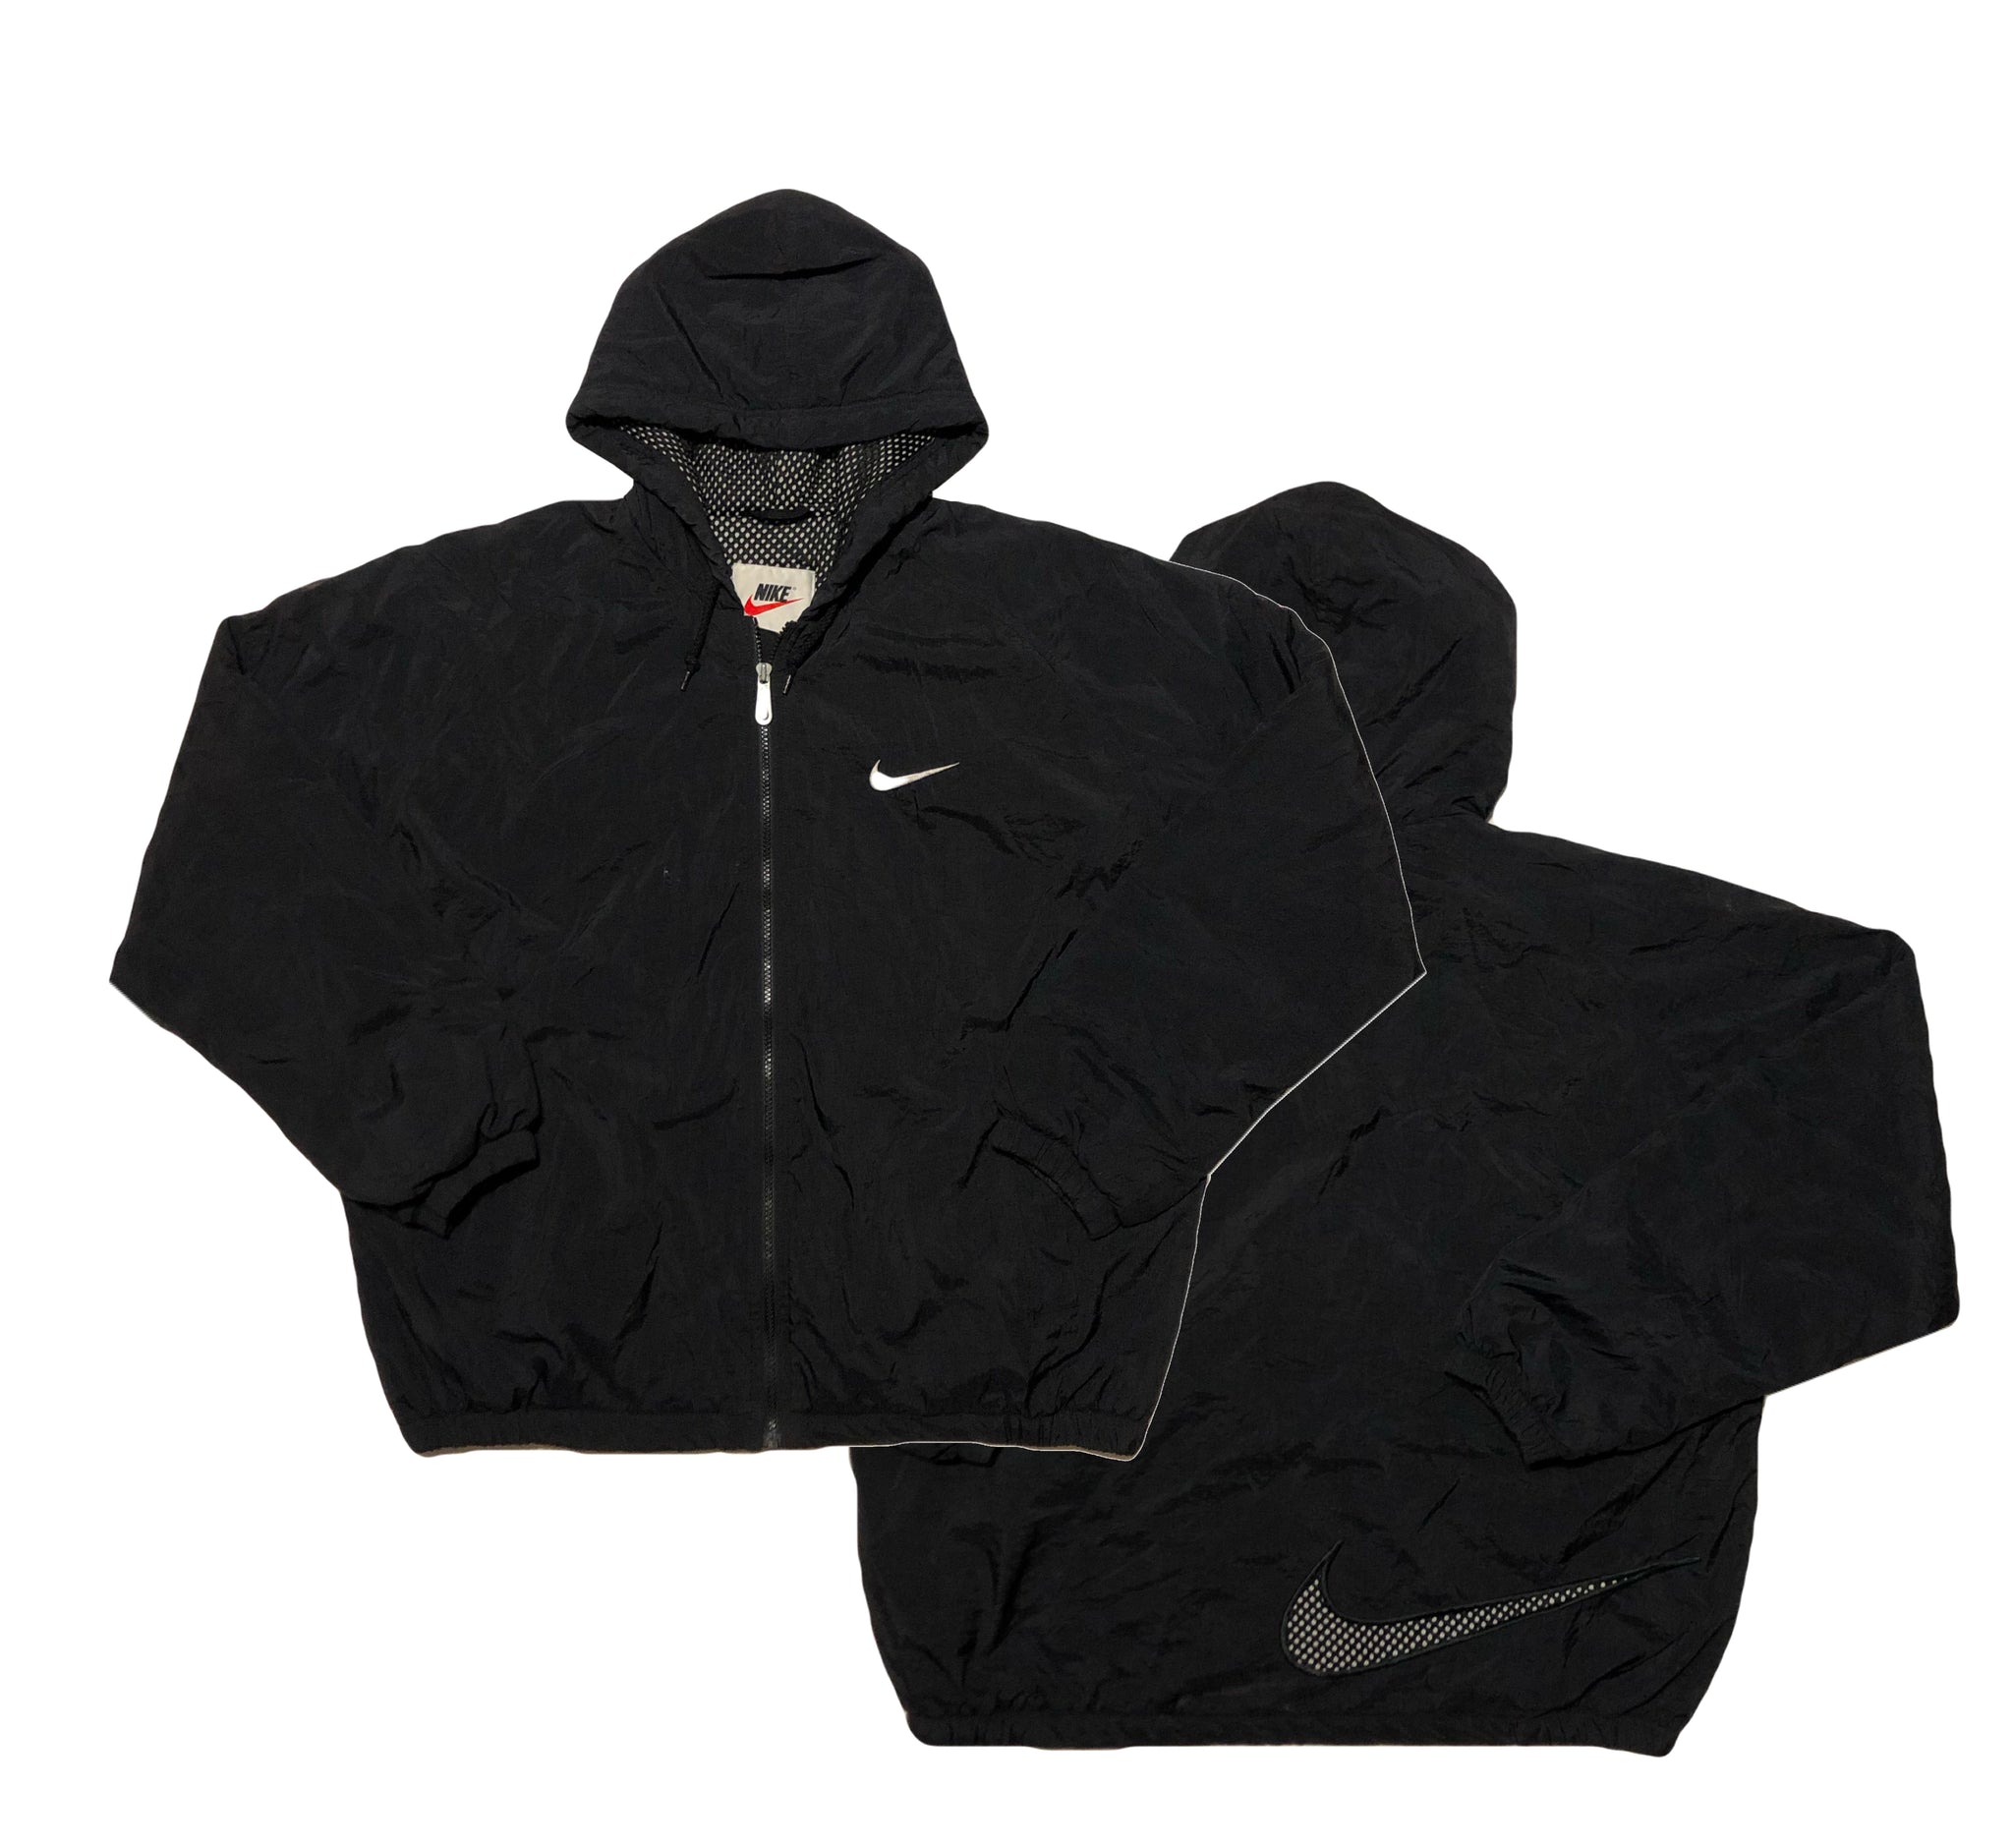 Vintage 90s Nike Swoosh Jacket | Beyond 94